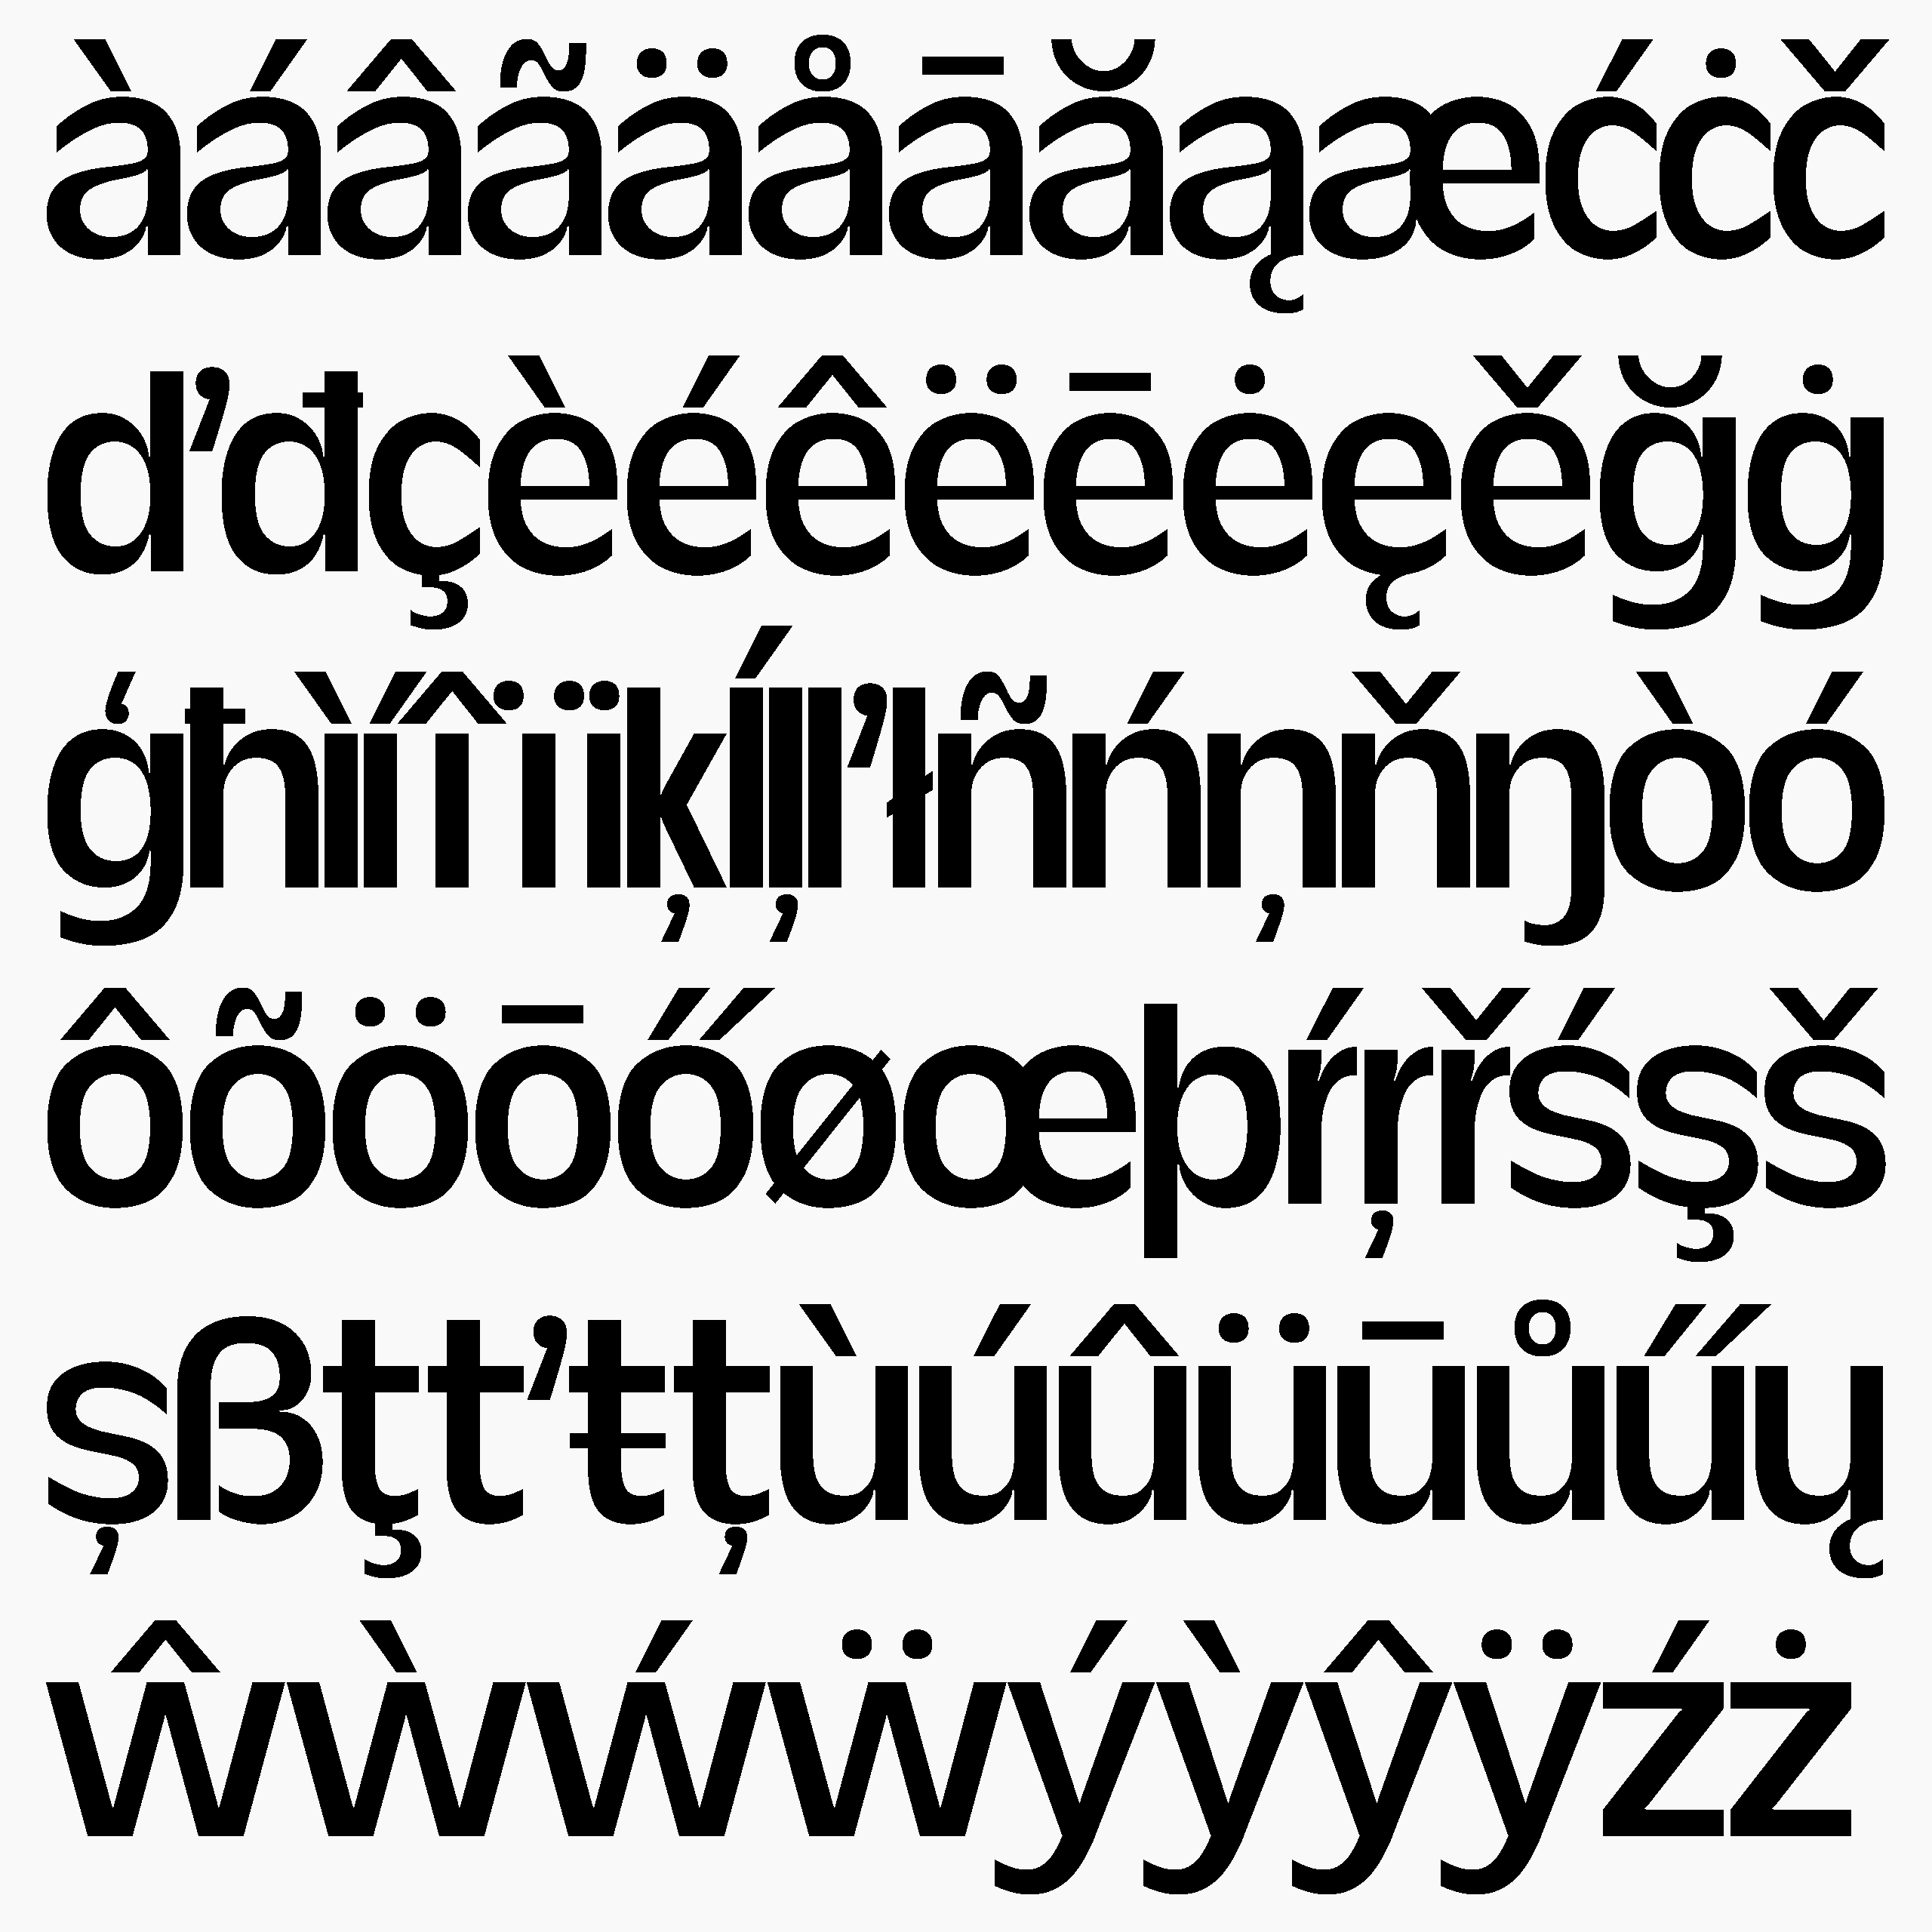 Daniel-Stuhlpfarrer_typedesign_graphicdesign_custom-font_custom-typeface_typography_ds-zirbal-5